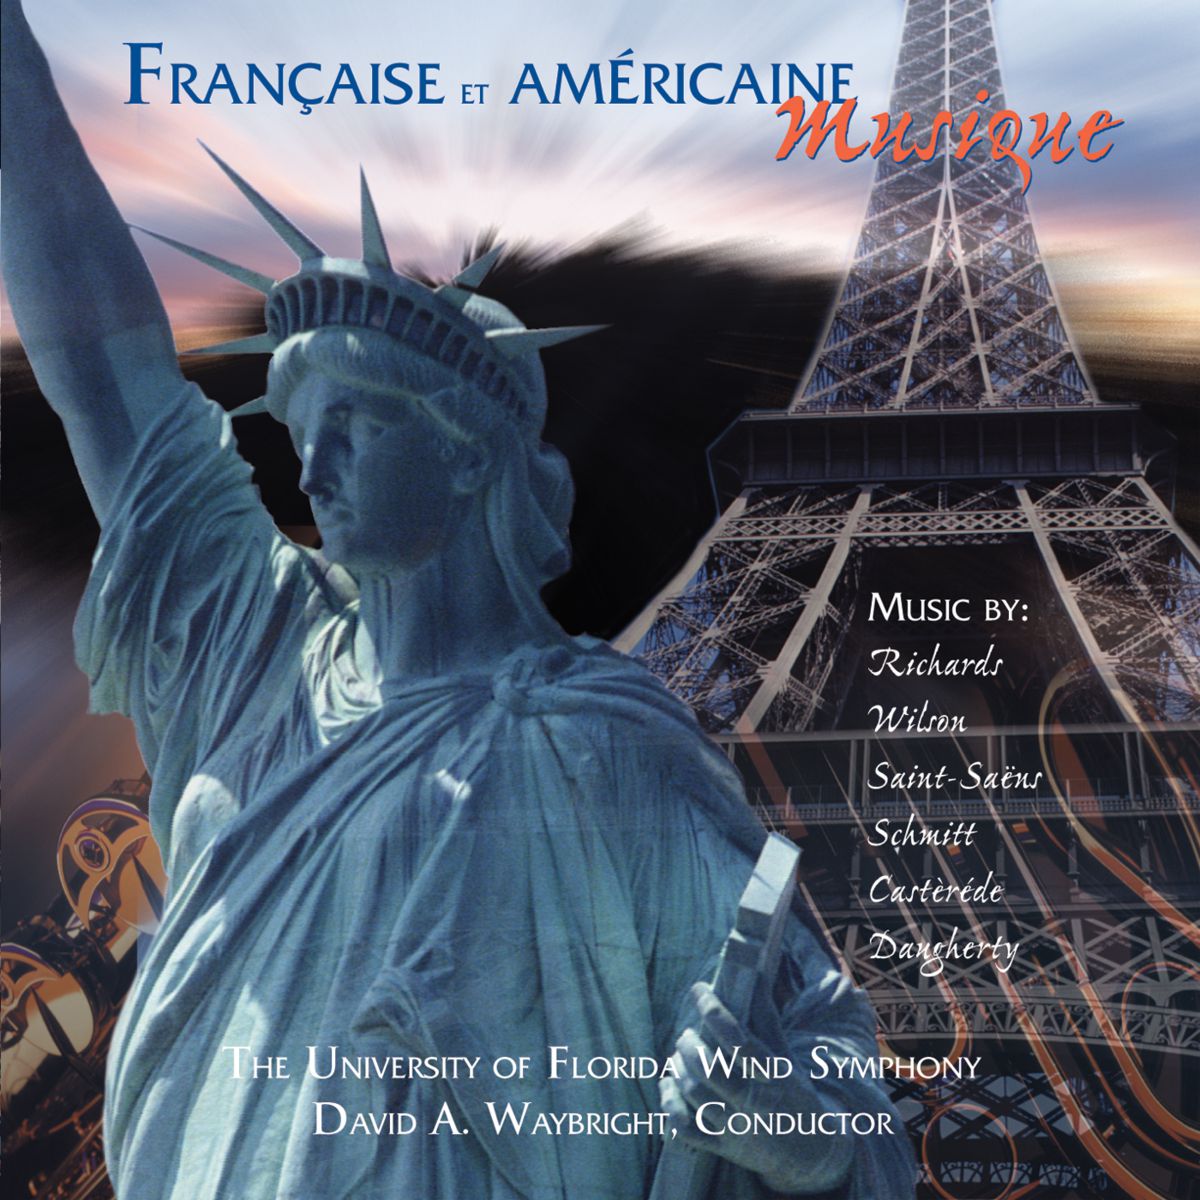 Franaise et Amricaine Musique - hier klicken